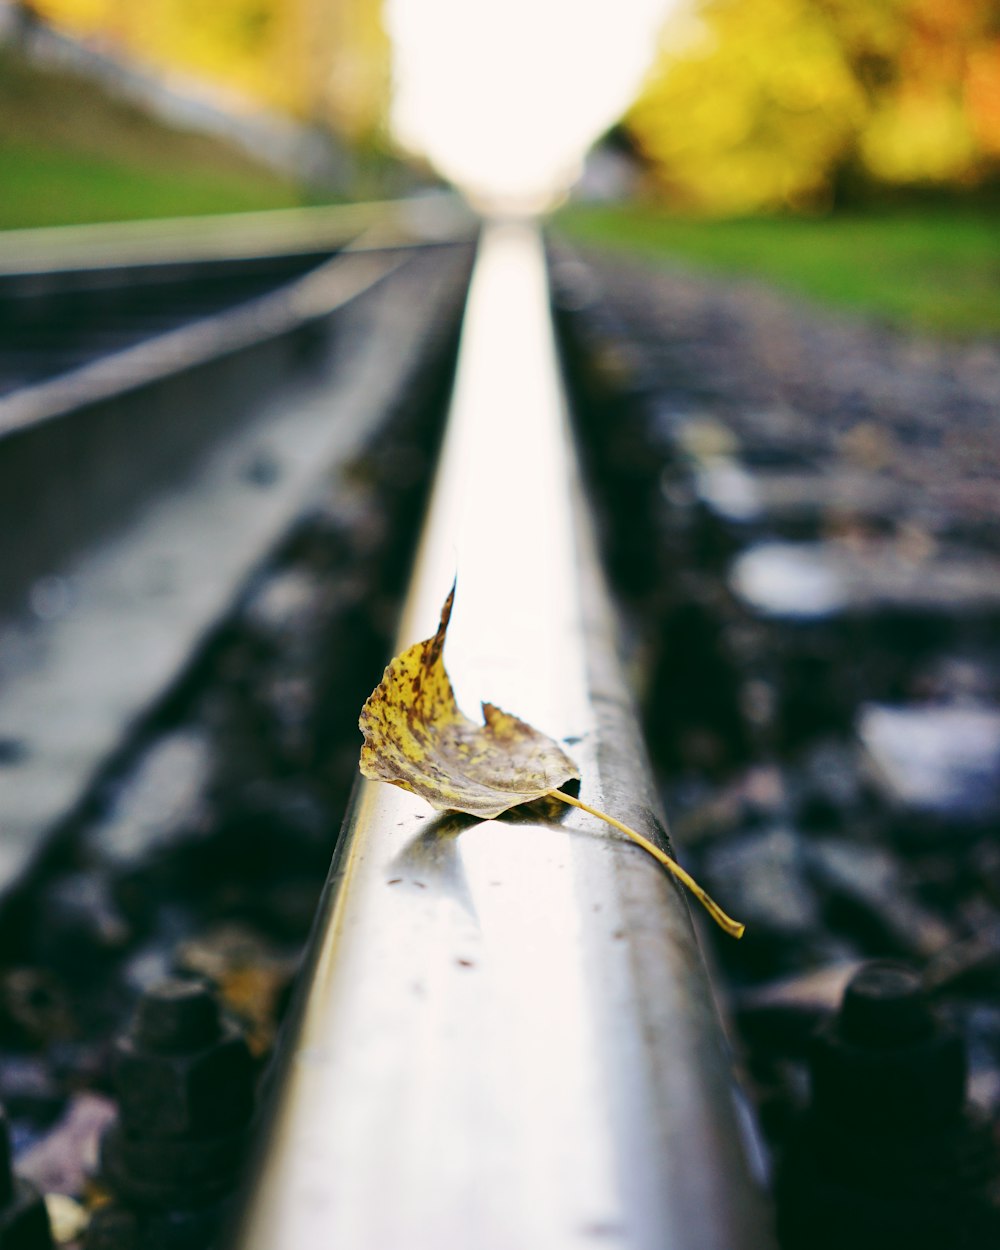 a lone leaf is sitting on a rail